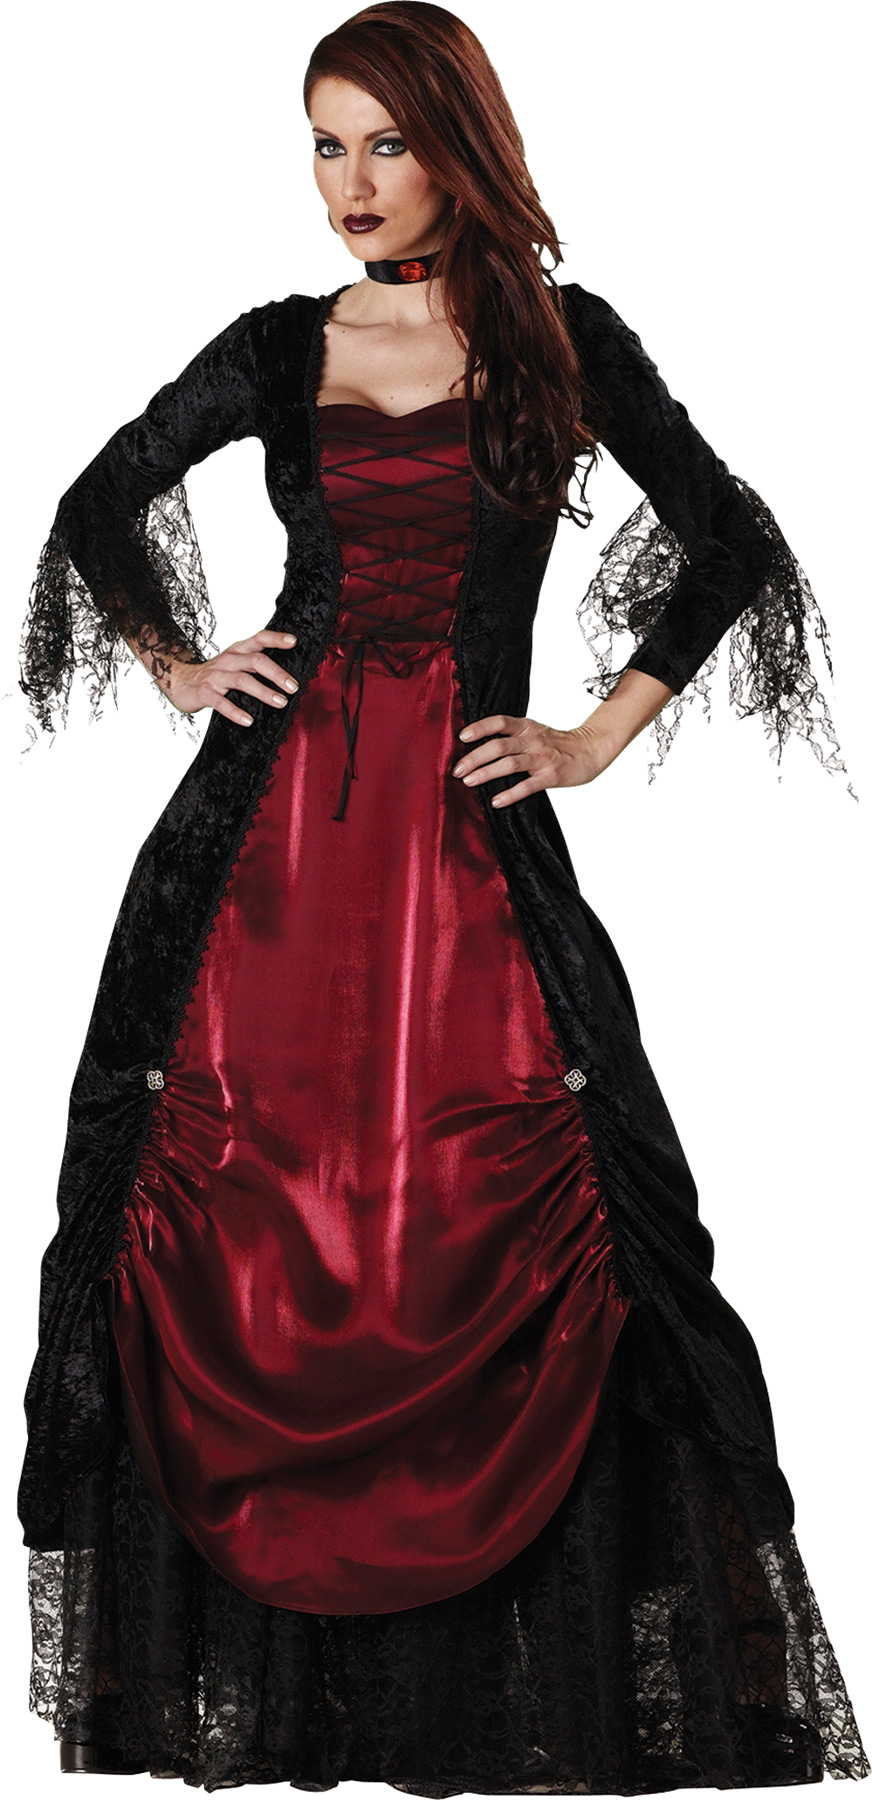 Women's Gothic Vampiress Costume